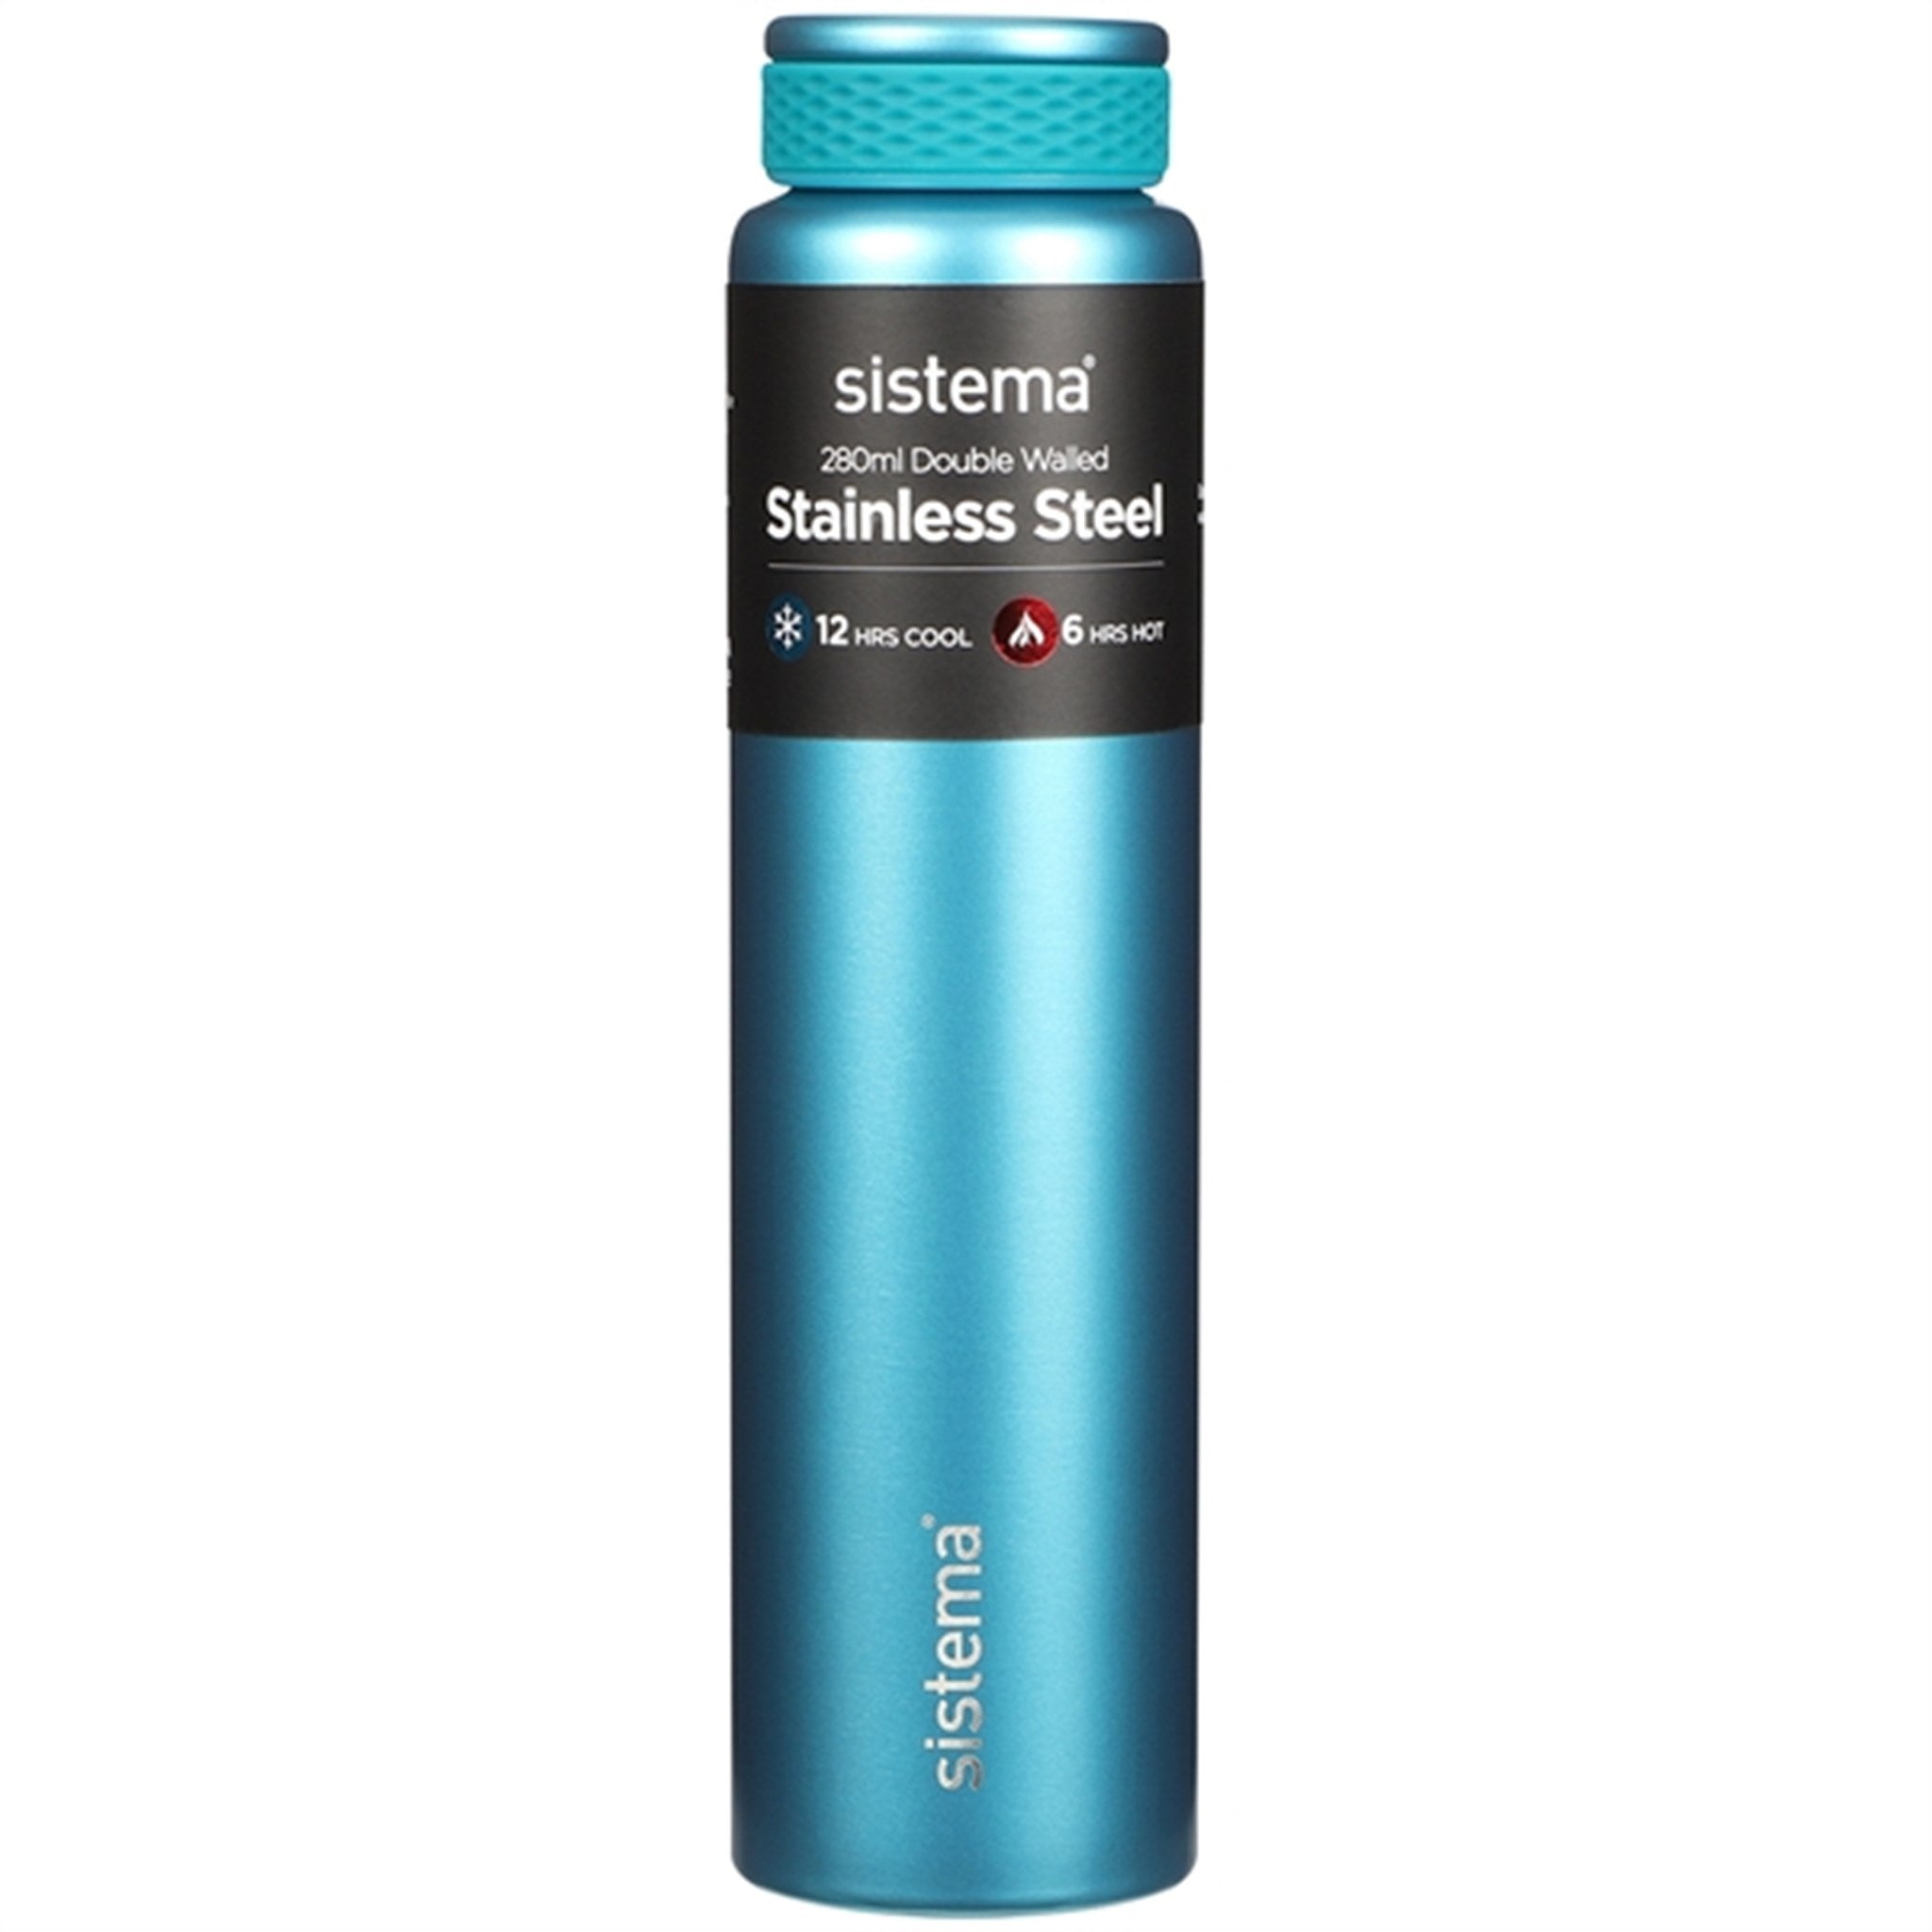 Sistema Stainless Steel Water Bottle 280 ml Teal